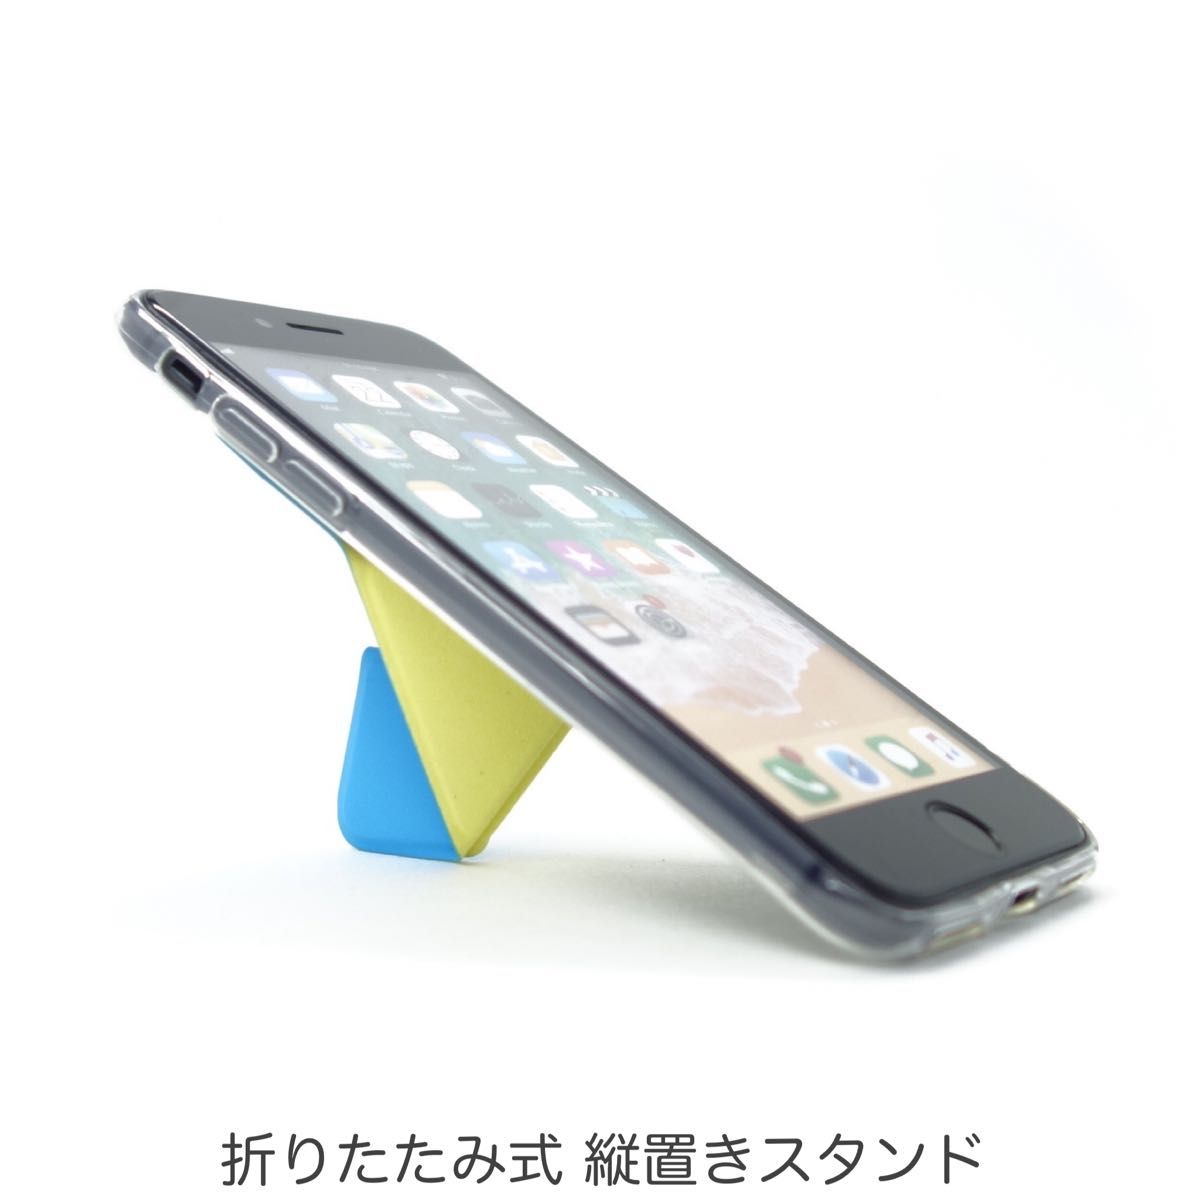 iPhone SE3 SE2 8 7 ケース スマホスタンド スマホグリップ マグネット内蔵 ワイヤレス充電OK ムーンブルー